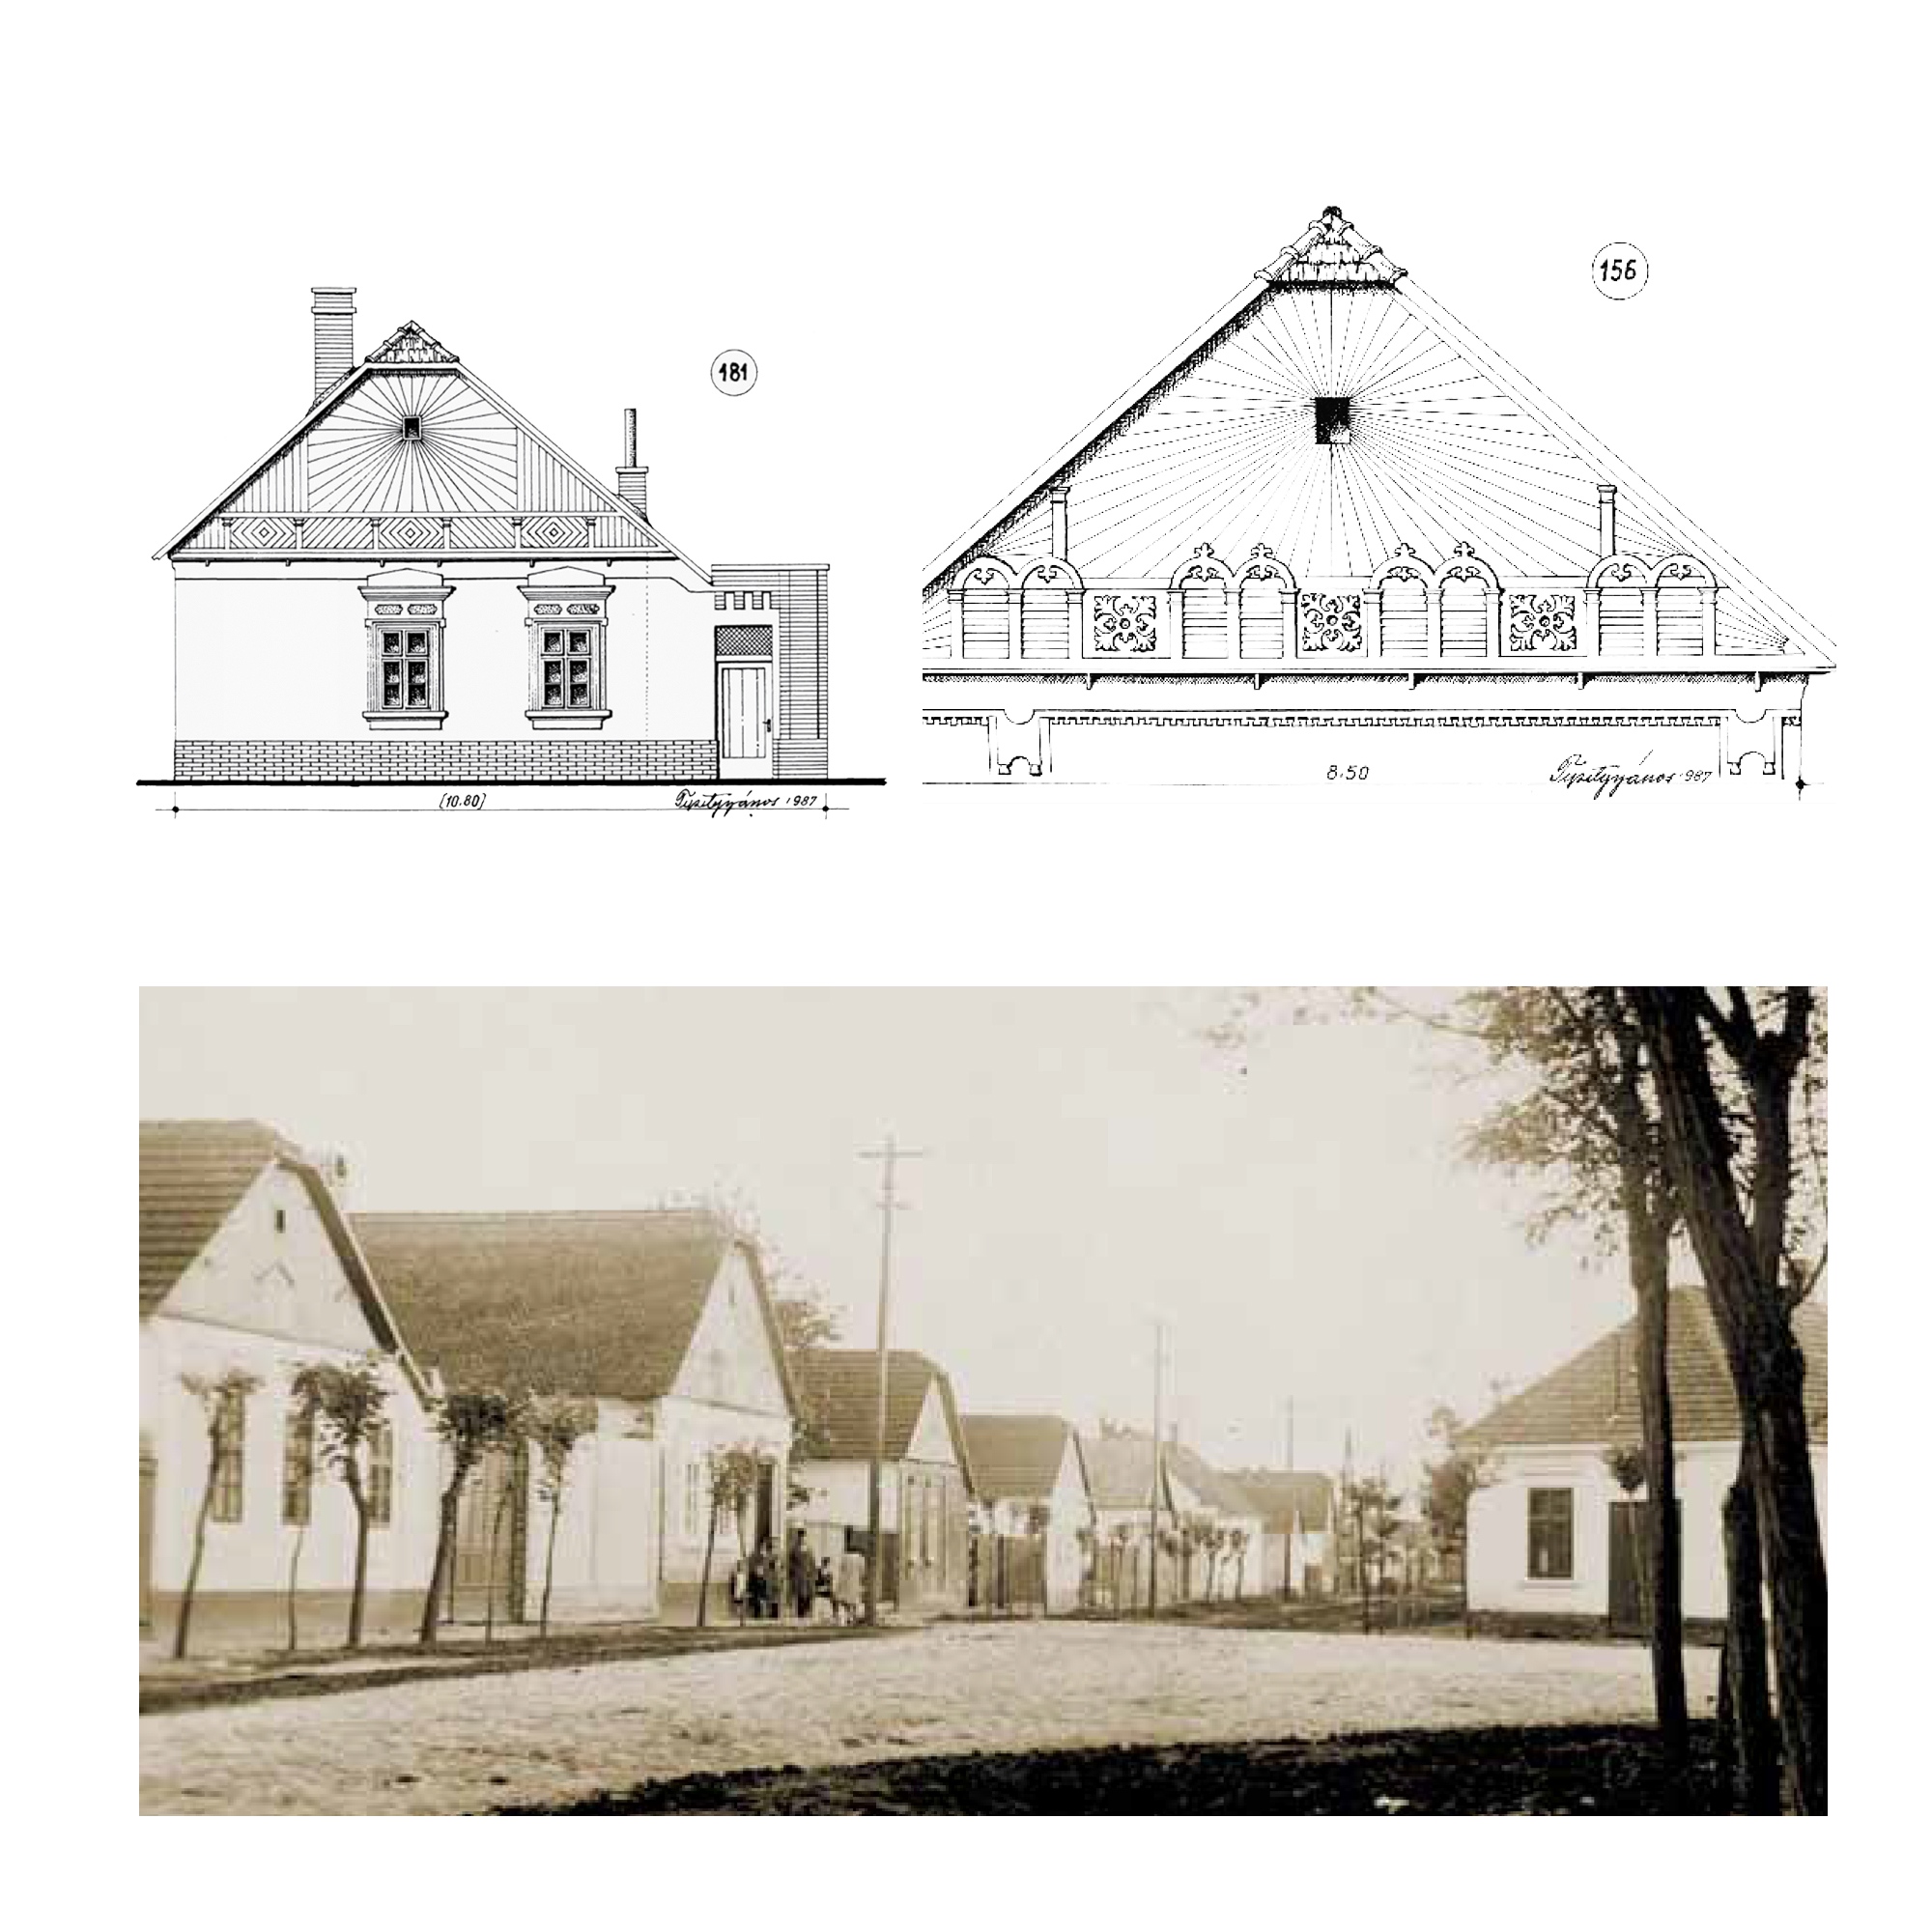 Az úgynevezett napsugaras házak a 18. század végétől épültek a környéken